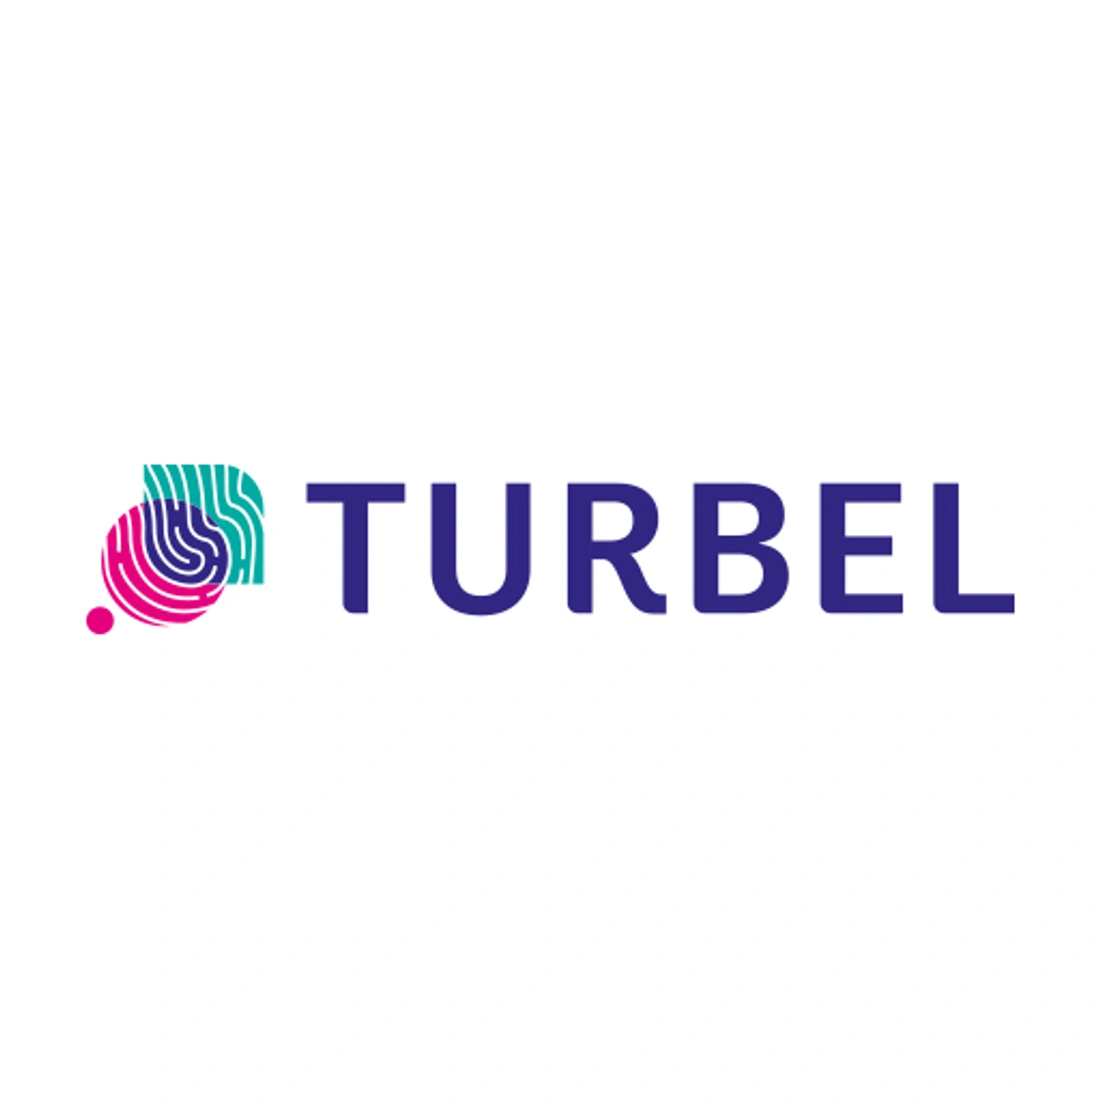 Logo de l'entreprise Turbel pour l'offre d'emploi Marketing & Communication Internship